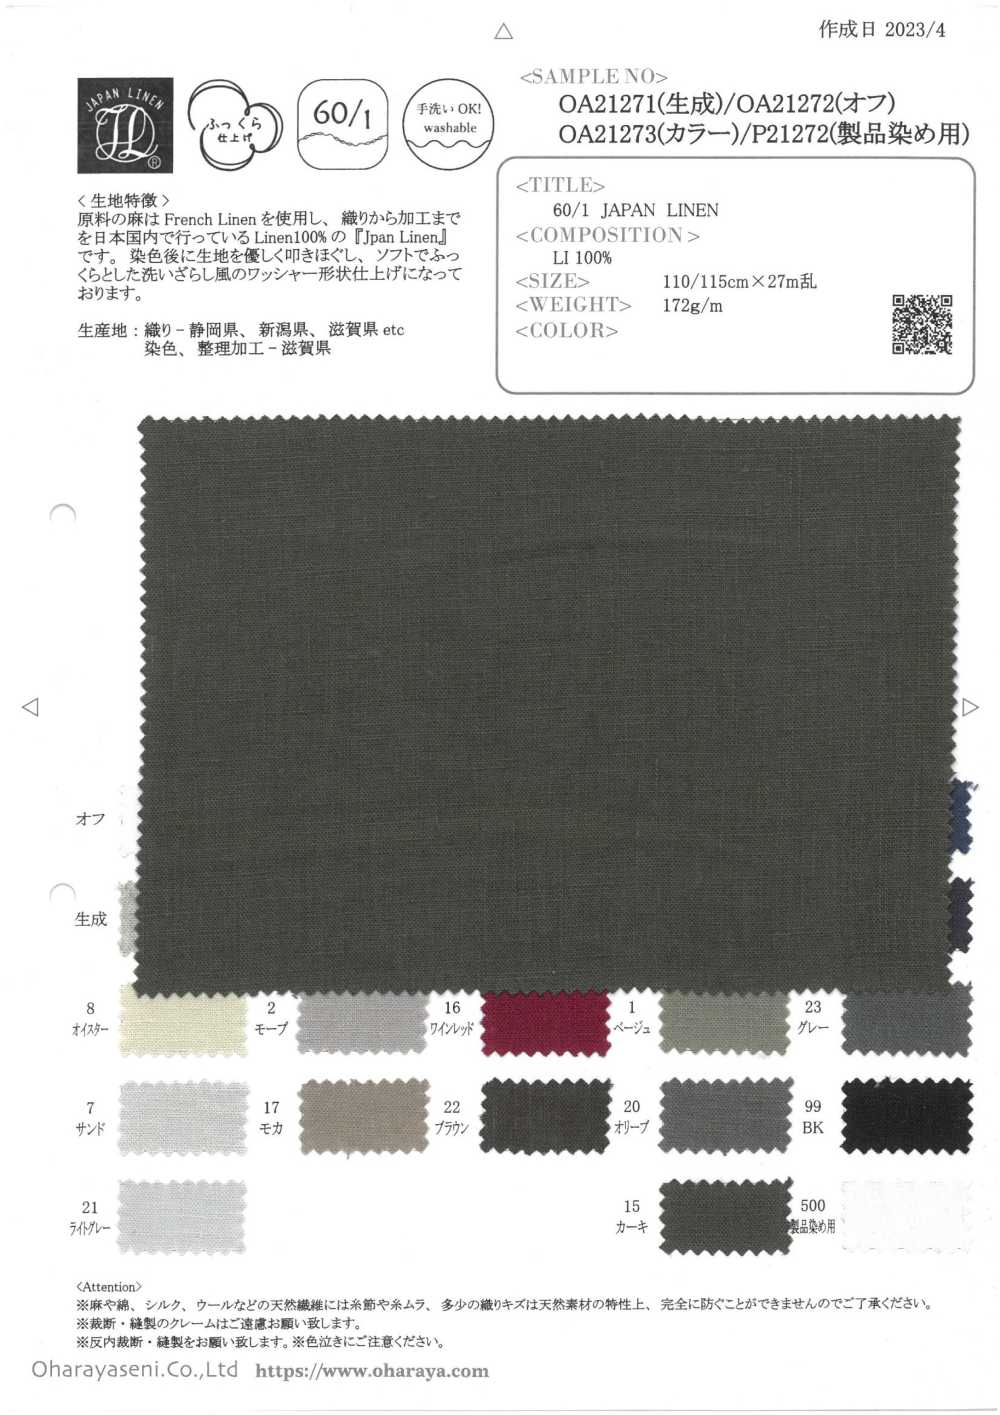 OA21273 60/1・JAPAN LINEN (Color)[Textile / Fabric] Oharayaseni